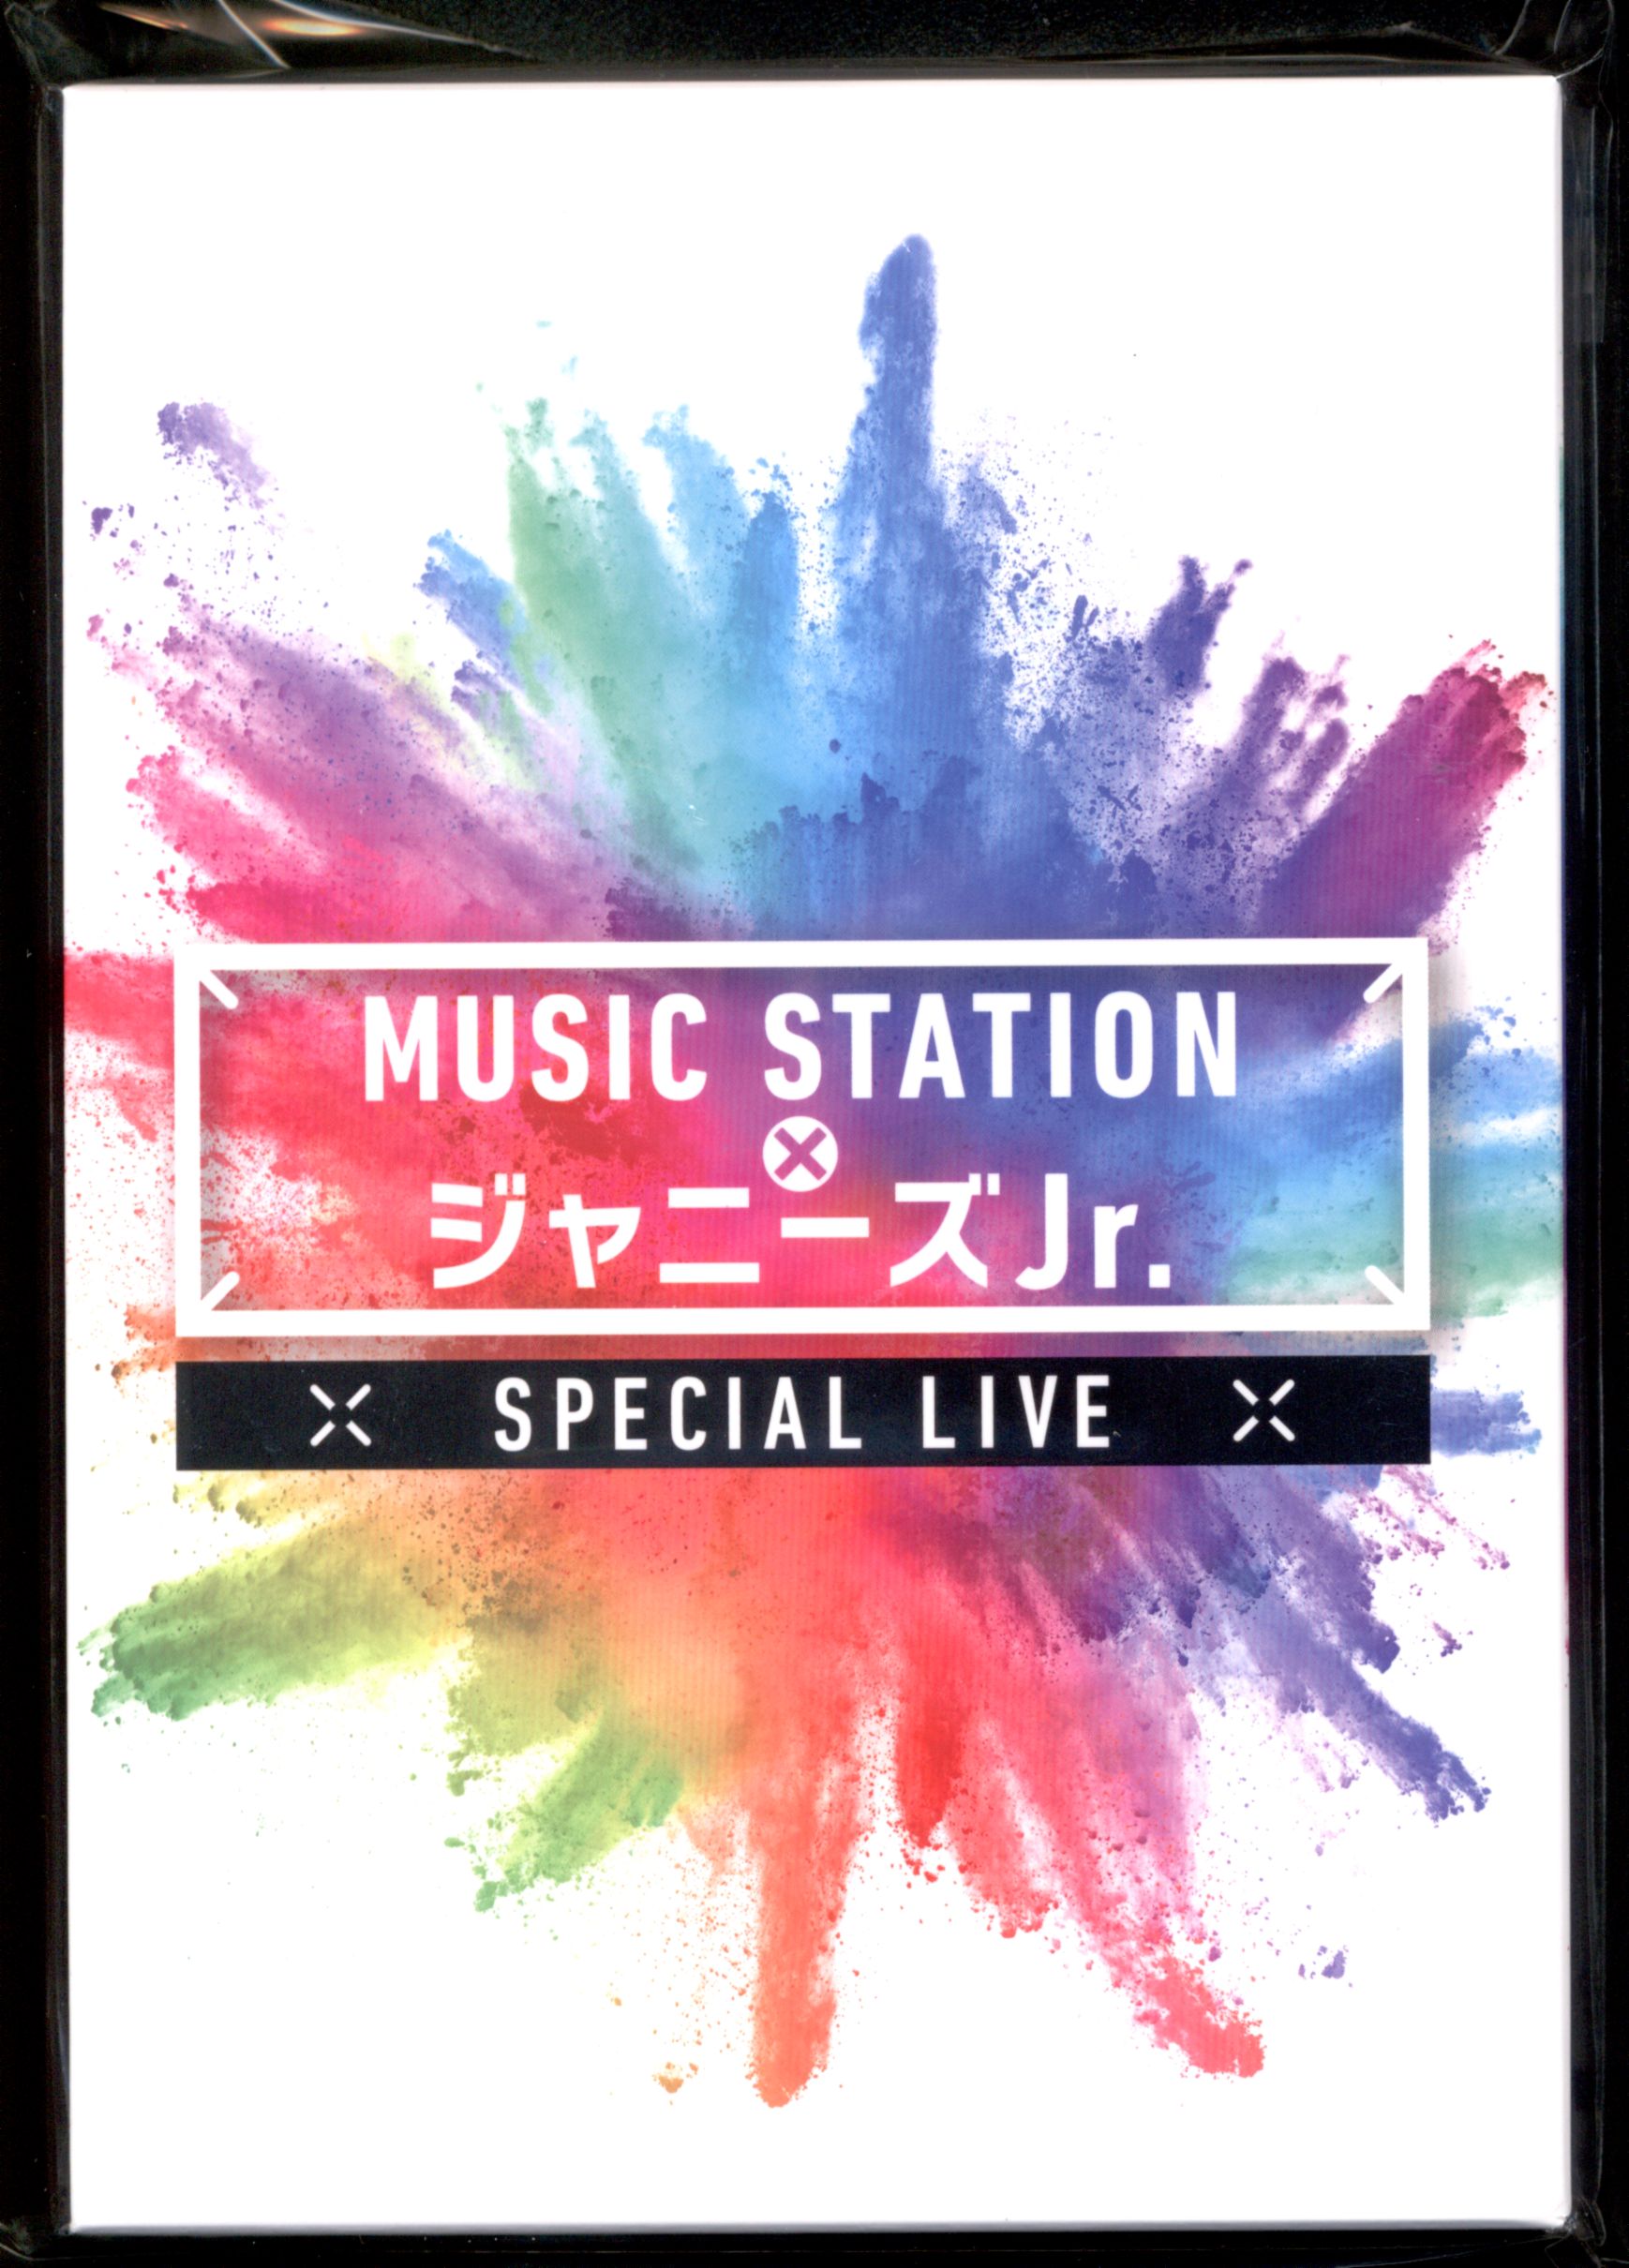 ジャニーズjr Music Station X ジャニーズjr Special ライブ 未開封 まんだらけ Mandarake